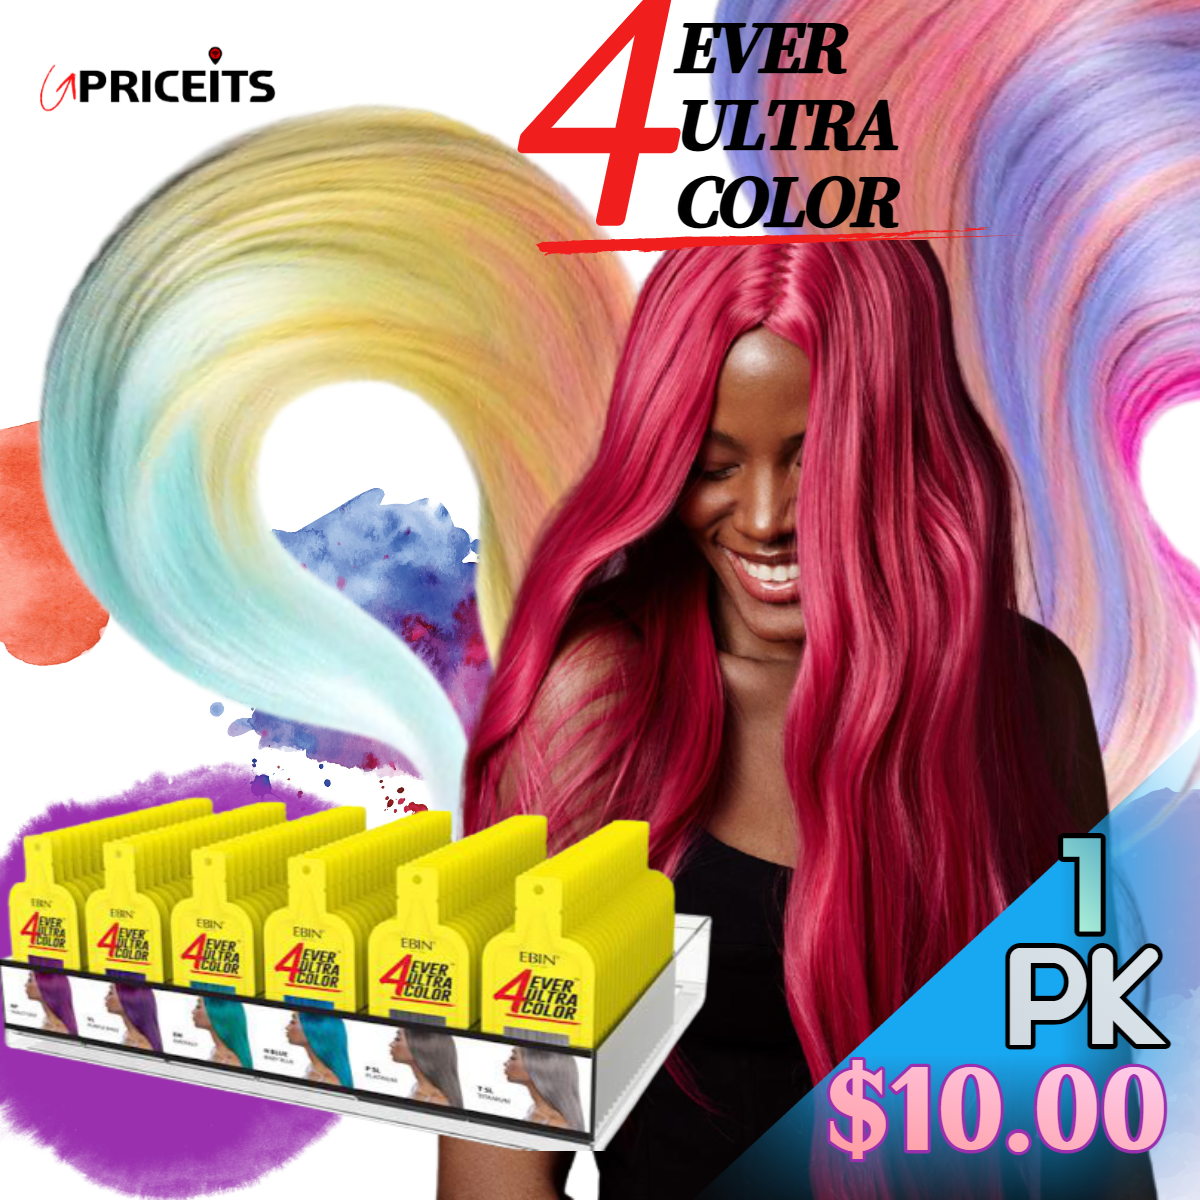 Ebin 4ever ultra color dye pack 35ml